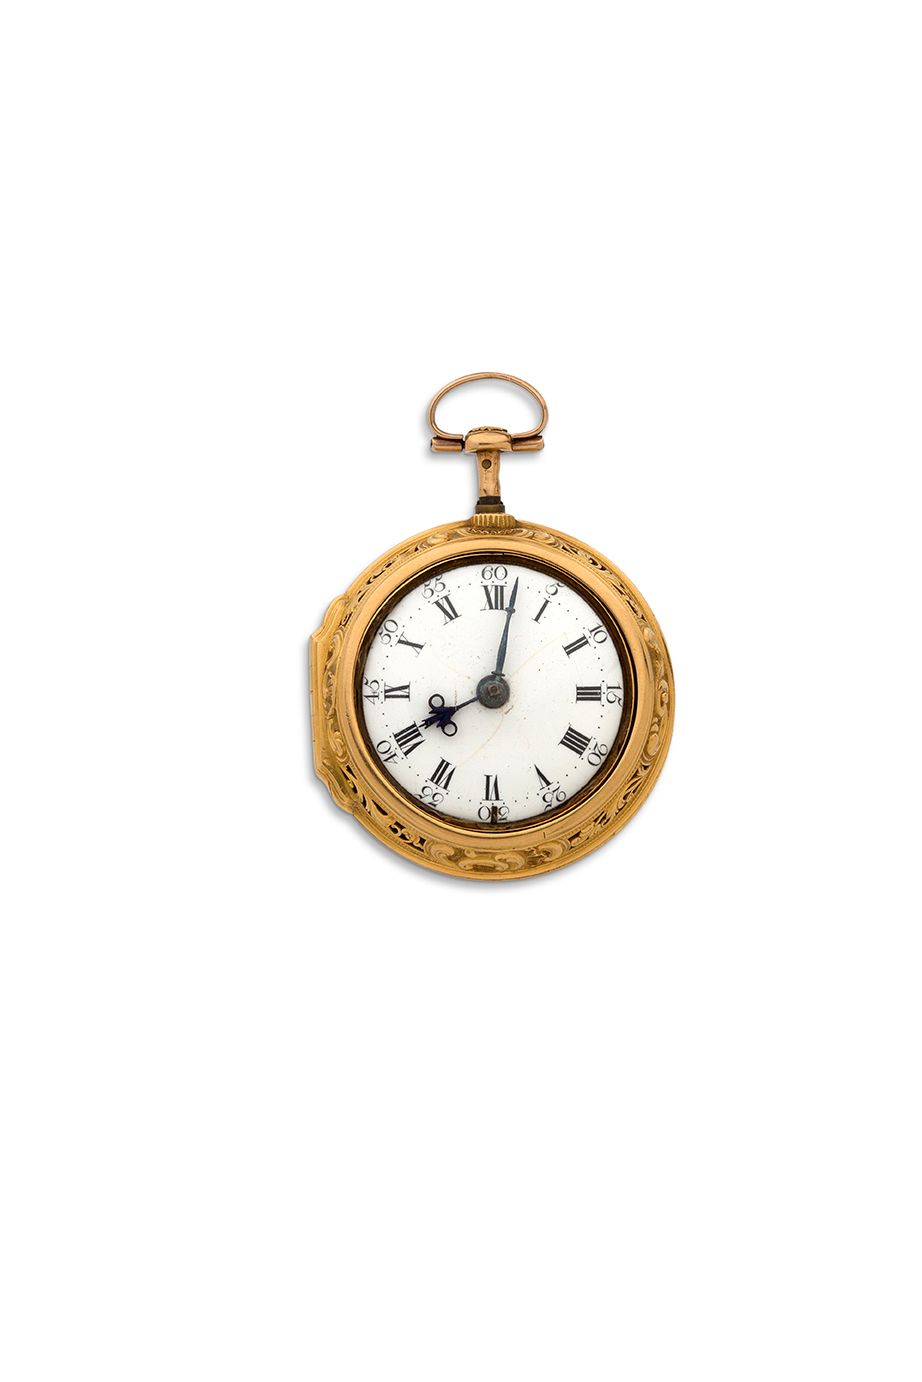 JAMES HUBERT, London 
Goldene Uhr mit Schlagwerk und Viertelstundenrepetition, g&hellip;